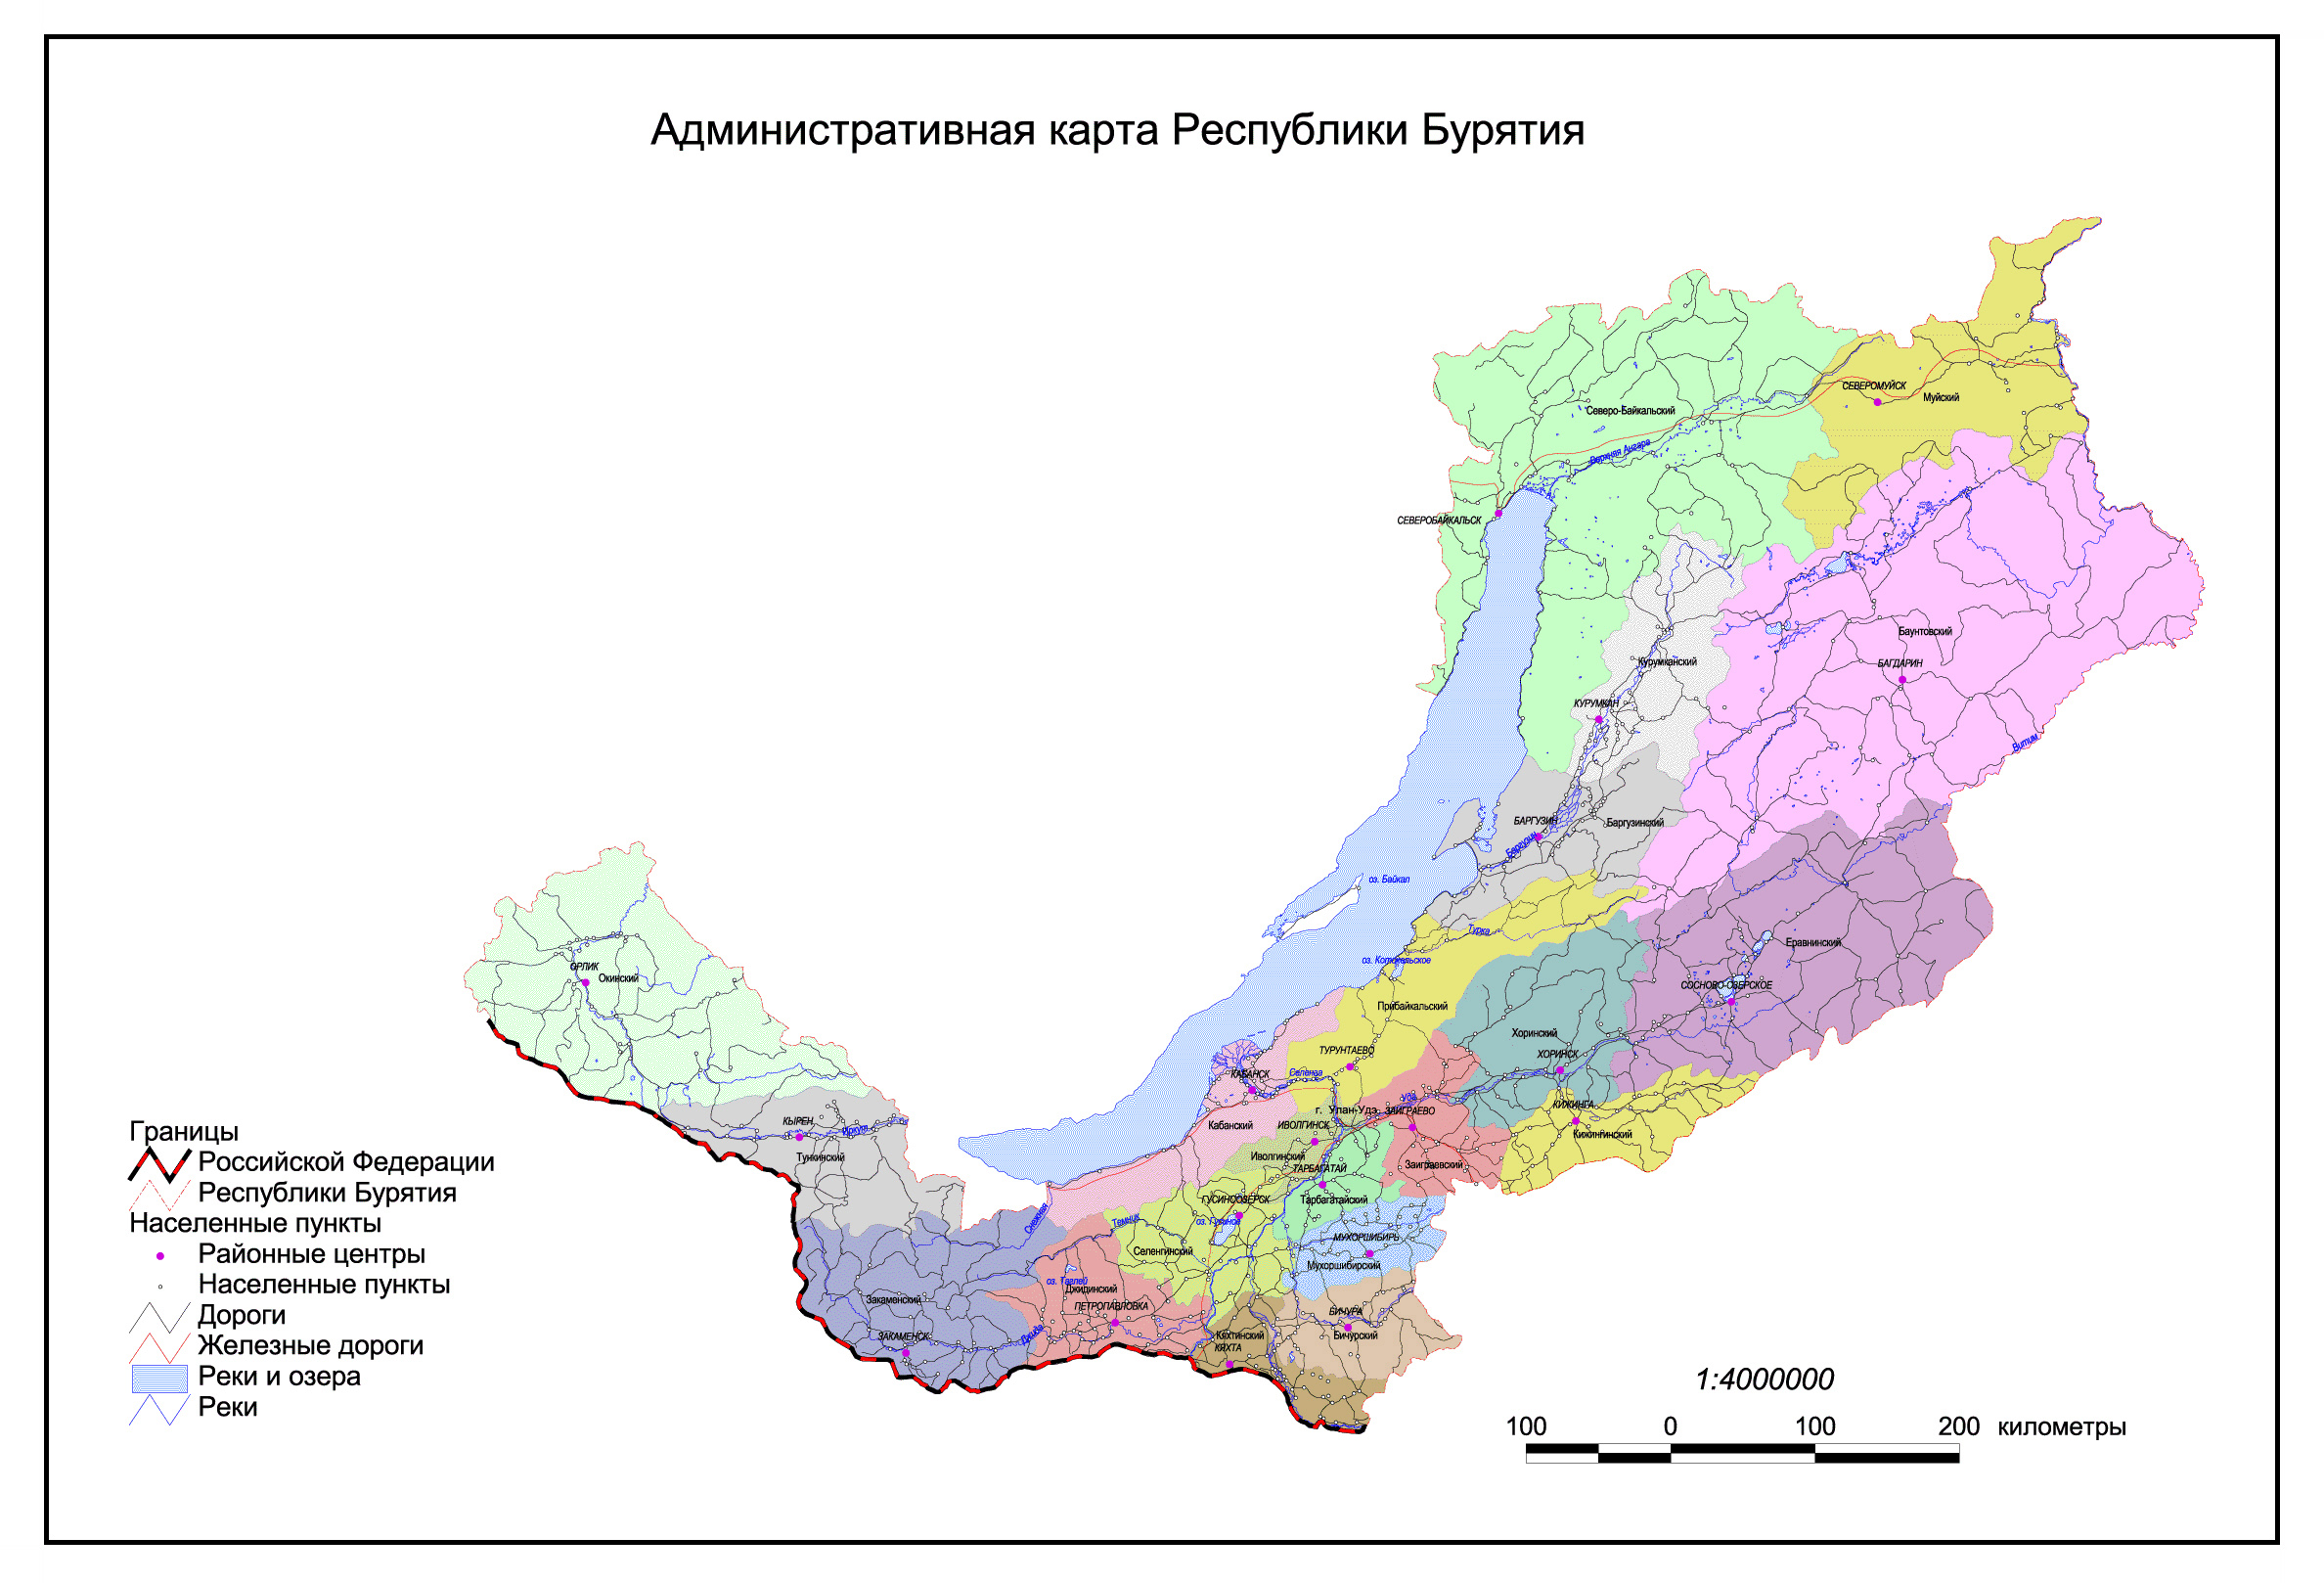 Большая подробная административная карта республики Бурятия.Административная карта Бурятии